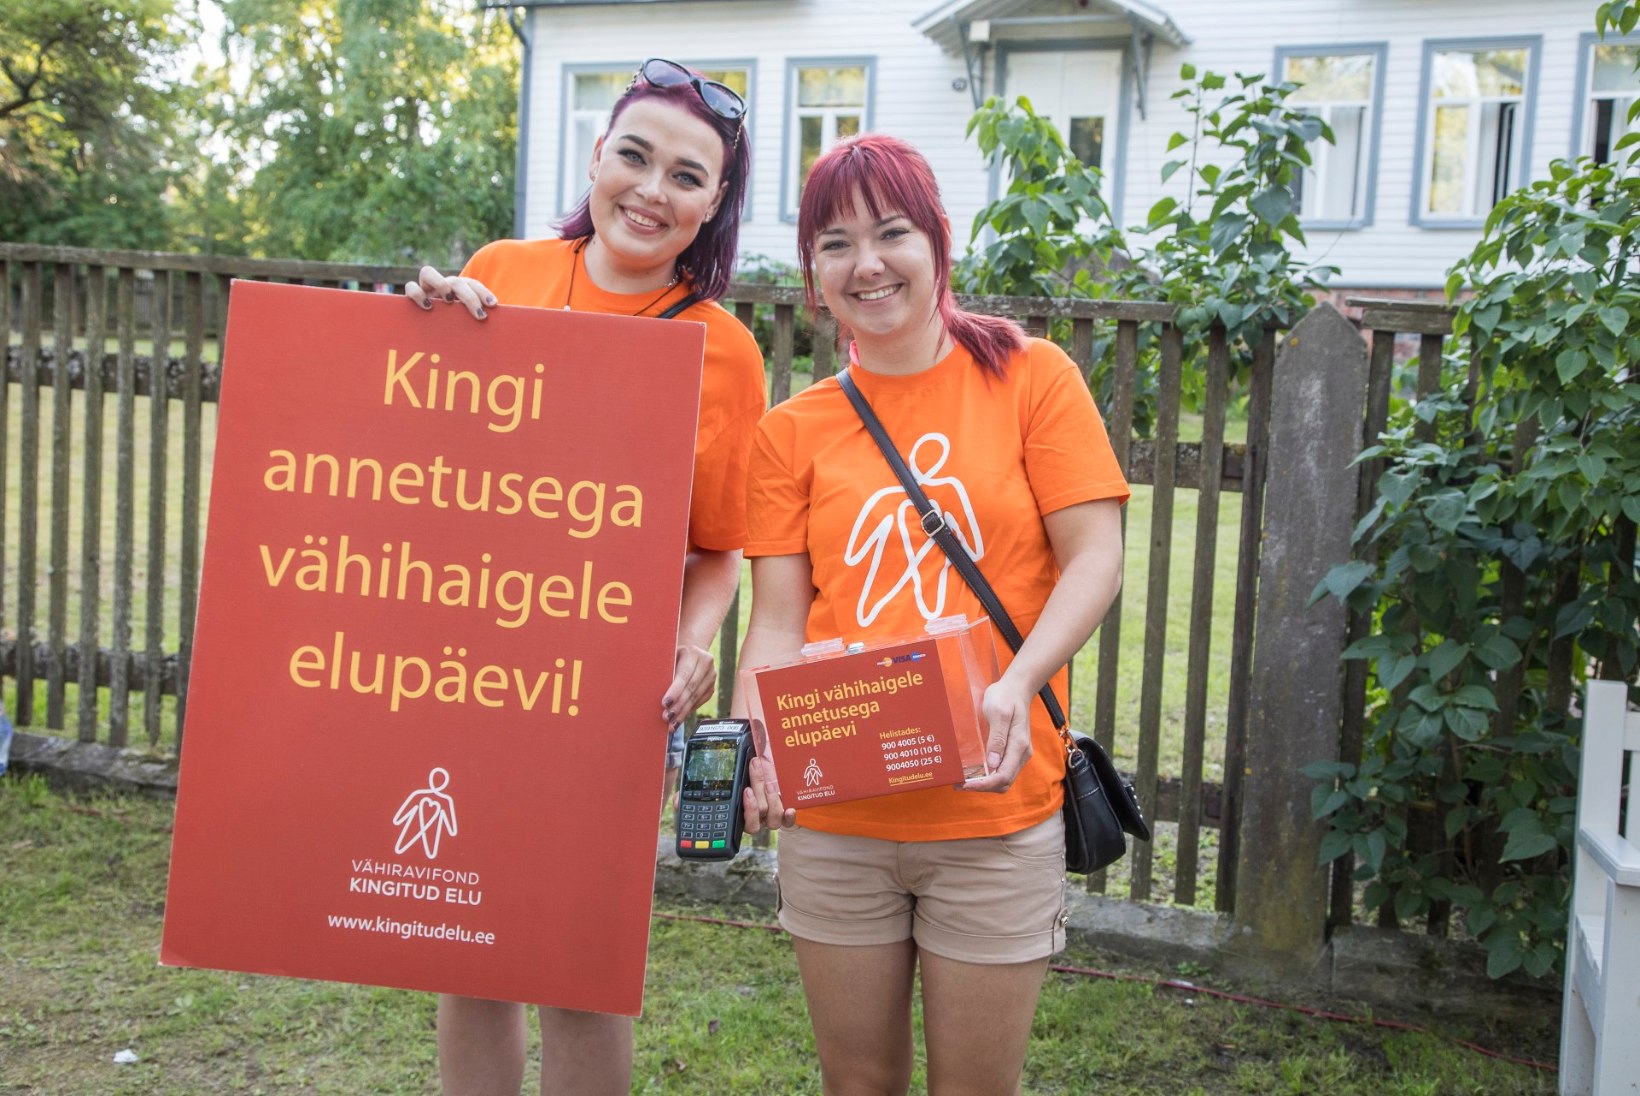 Arvamusfestivali, Viru Folgi ja Hauka laada külalised annetasid vähihaigete heaks ligi 4700 eurot